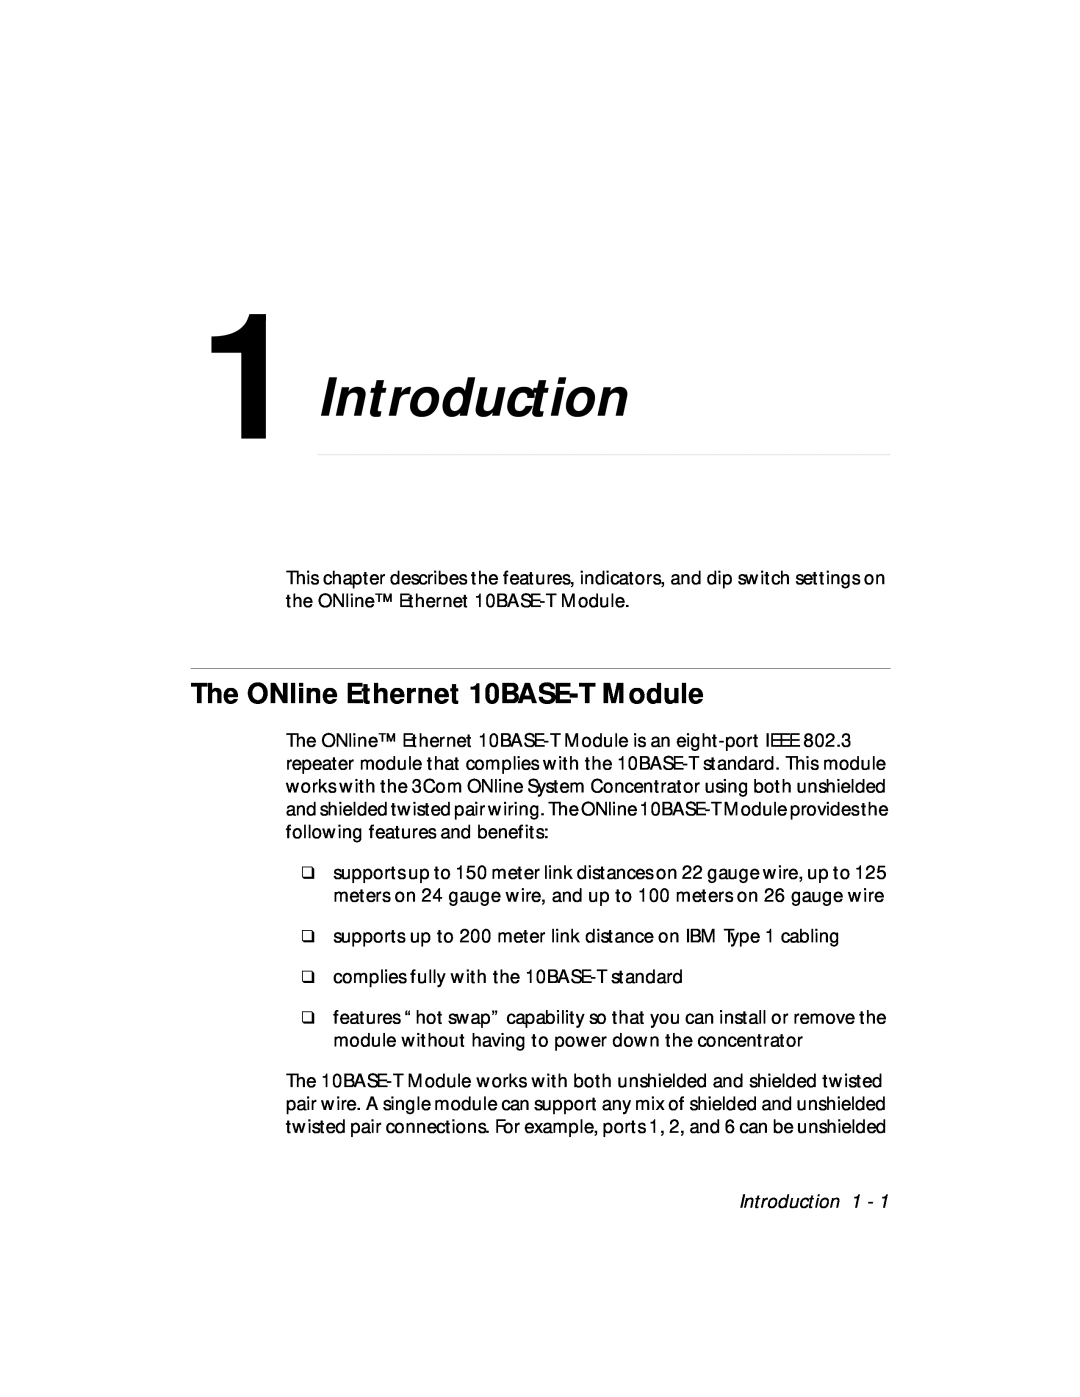 3Com 5108M-TP manual Introduction, The ONline Ethernet 10BASE-T Module 